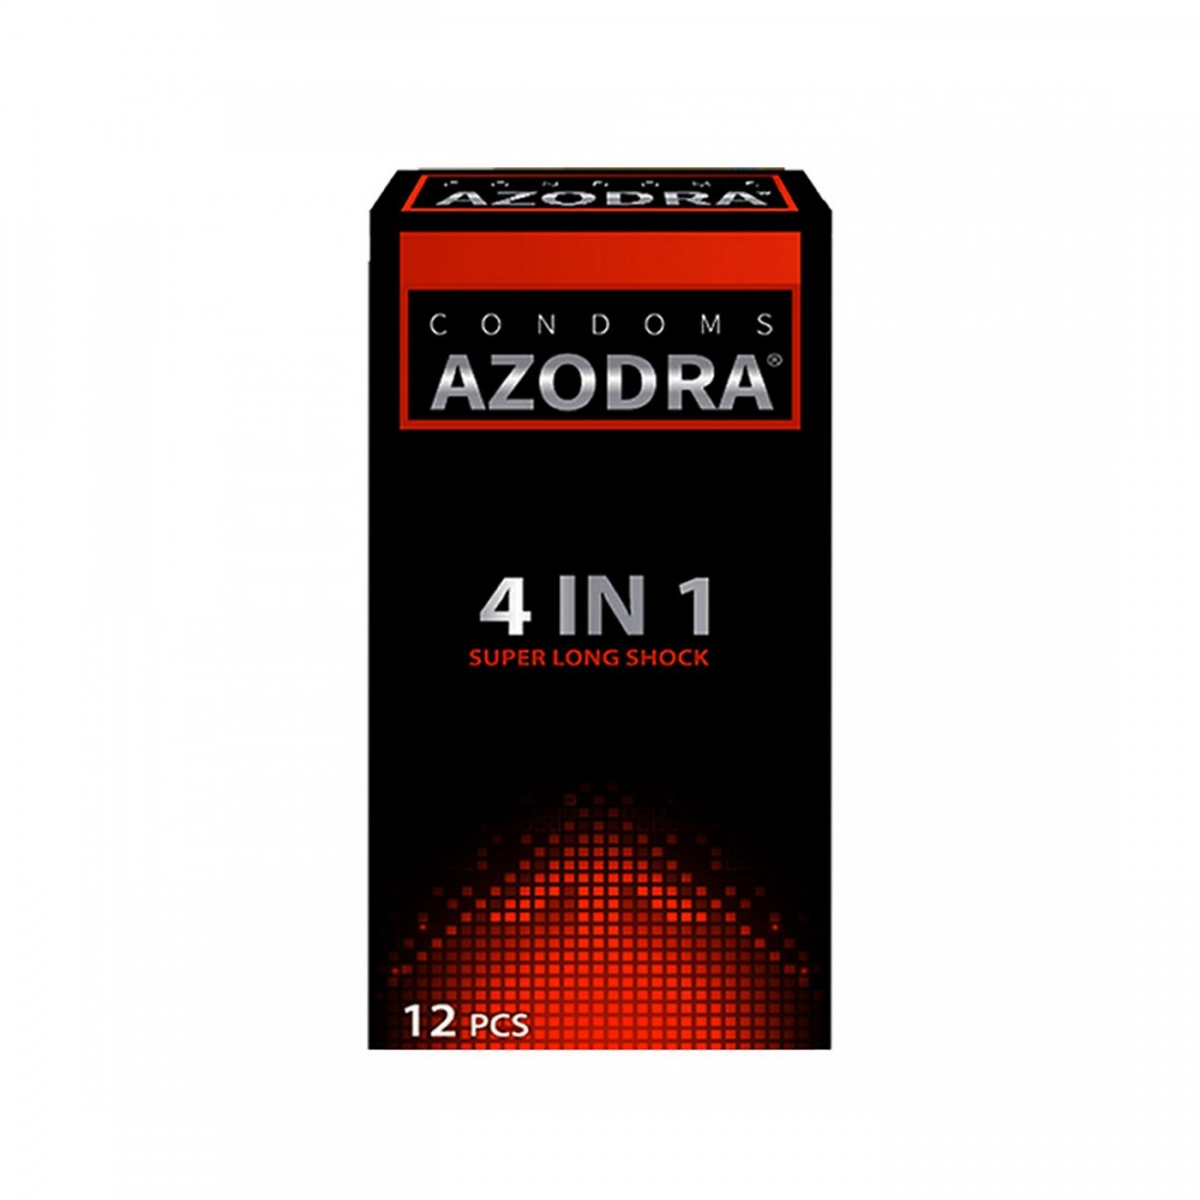 Bao cao su Azodra 4 in 1 Super Long Shock màu đỏ, Hộp 12 cái